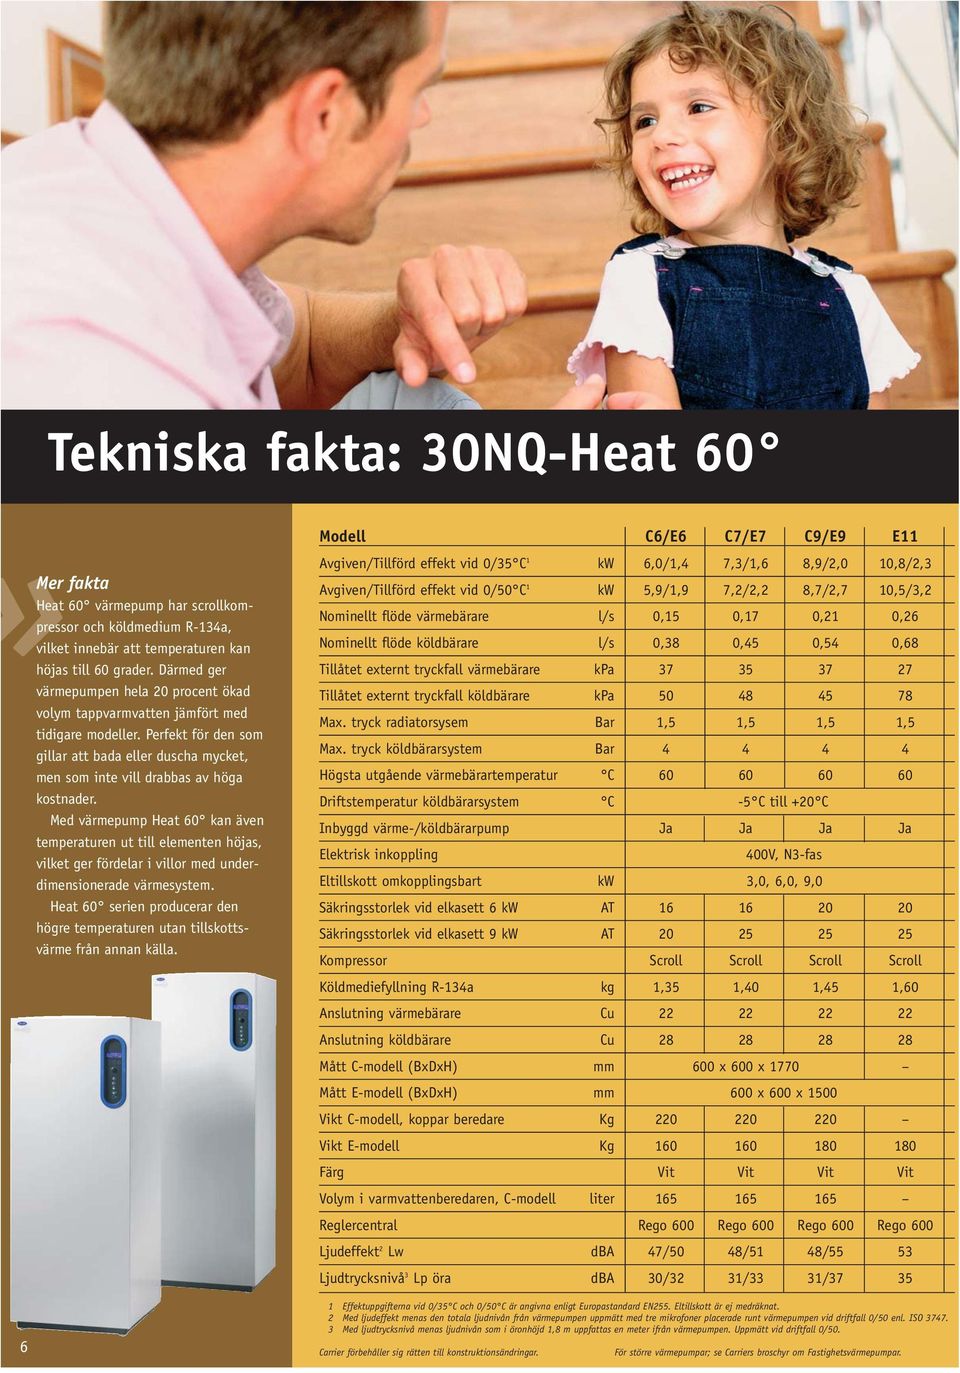 Med värmepump Heat 60 kan även temperaturen ut till elementen höjas, vilket ger fördelar i villor med underdimensionerade värmesystem.